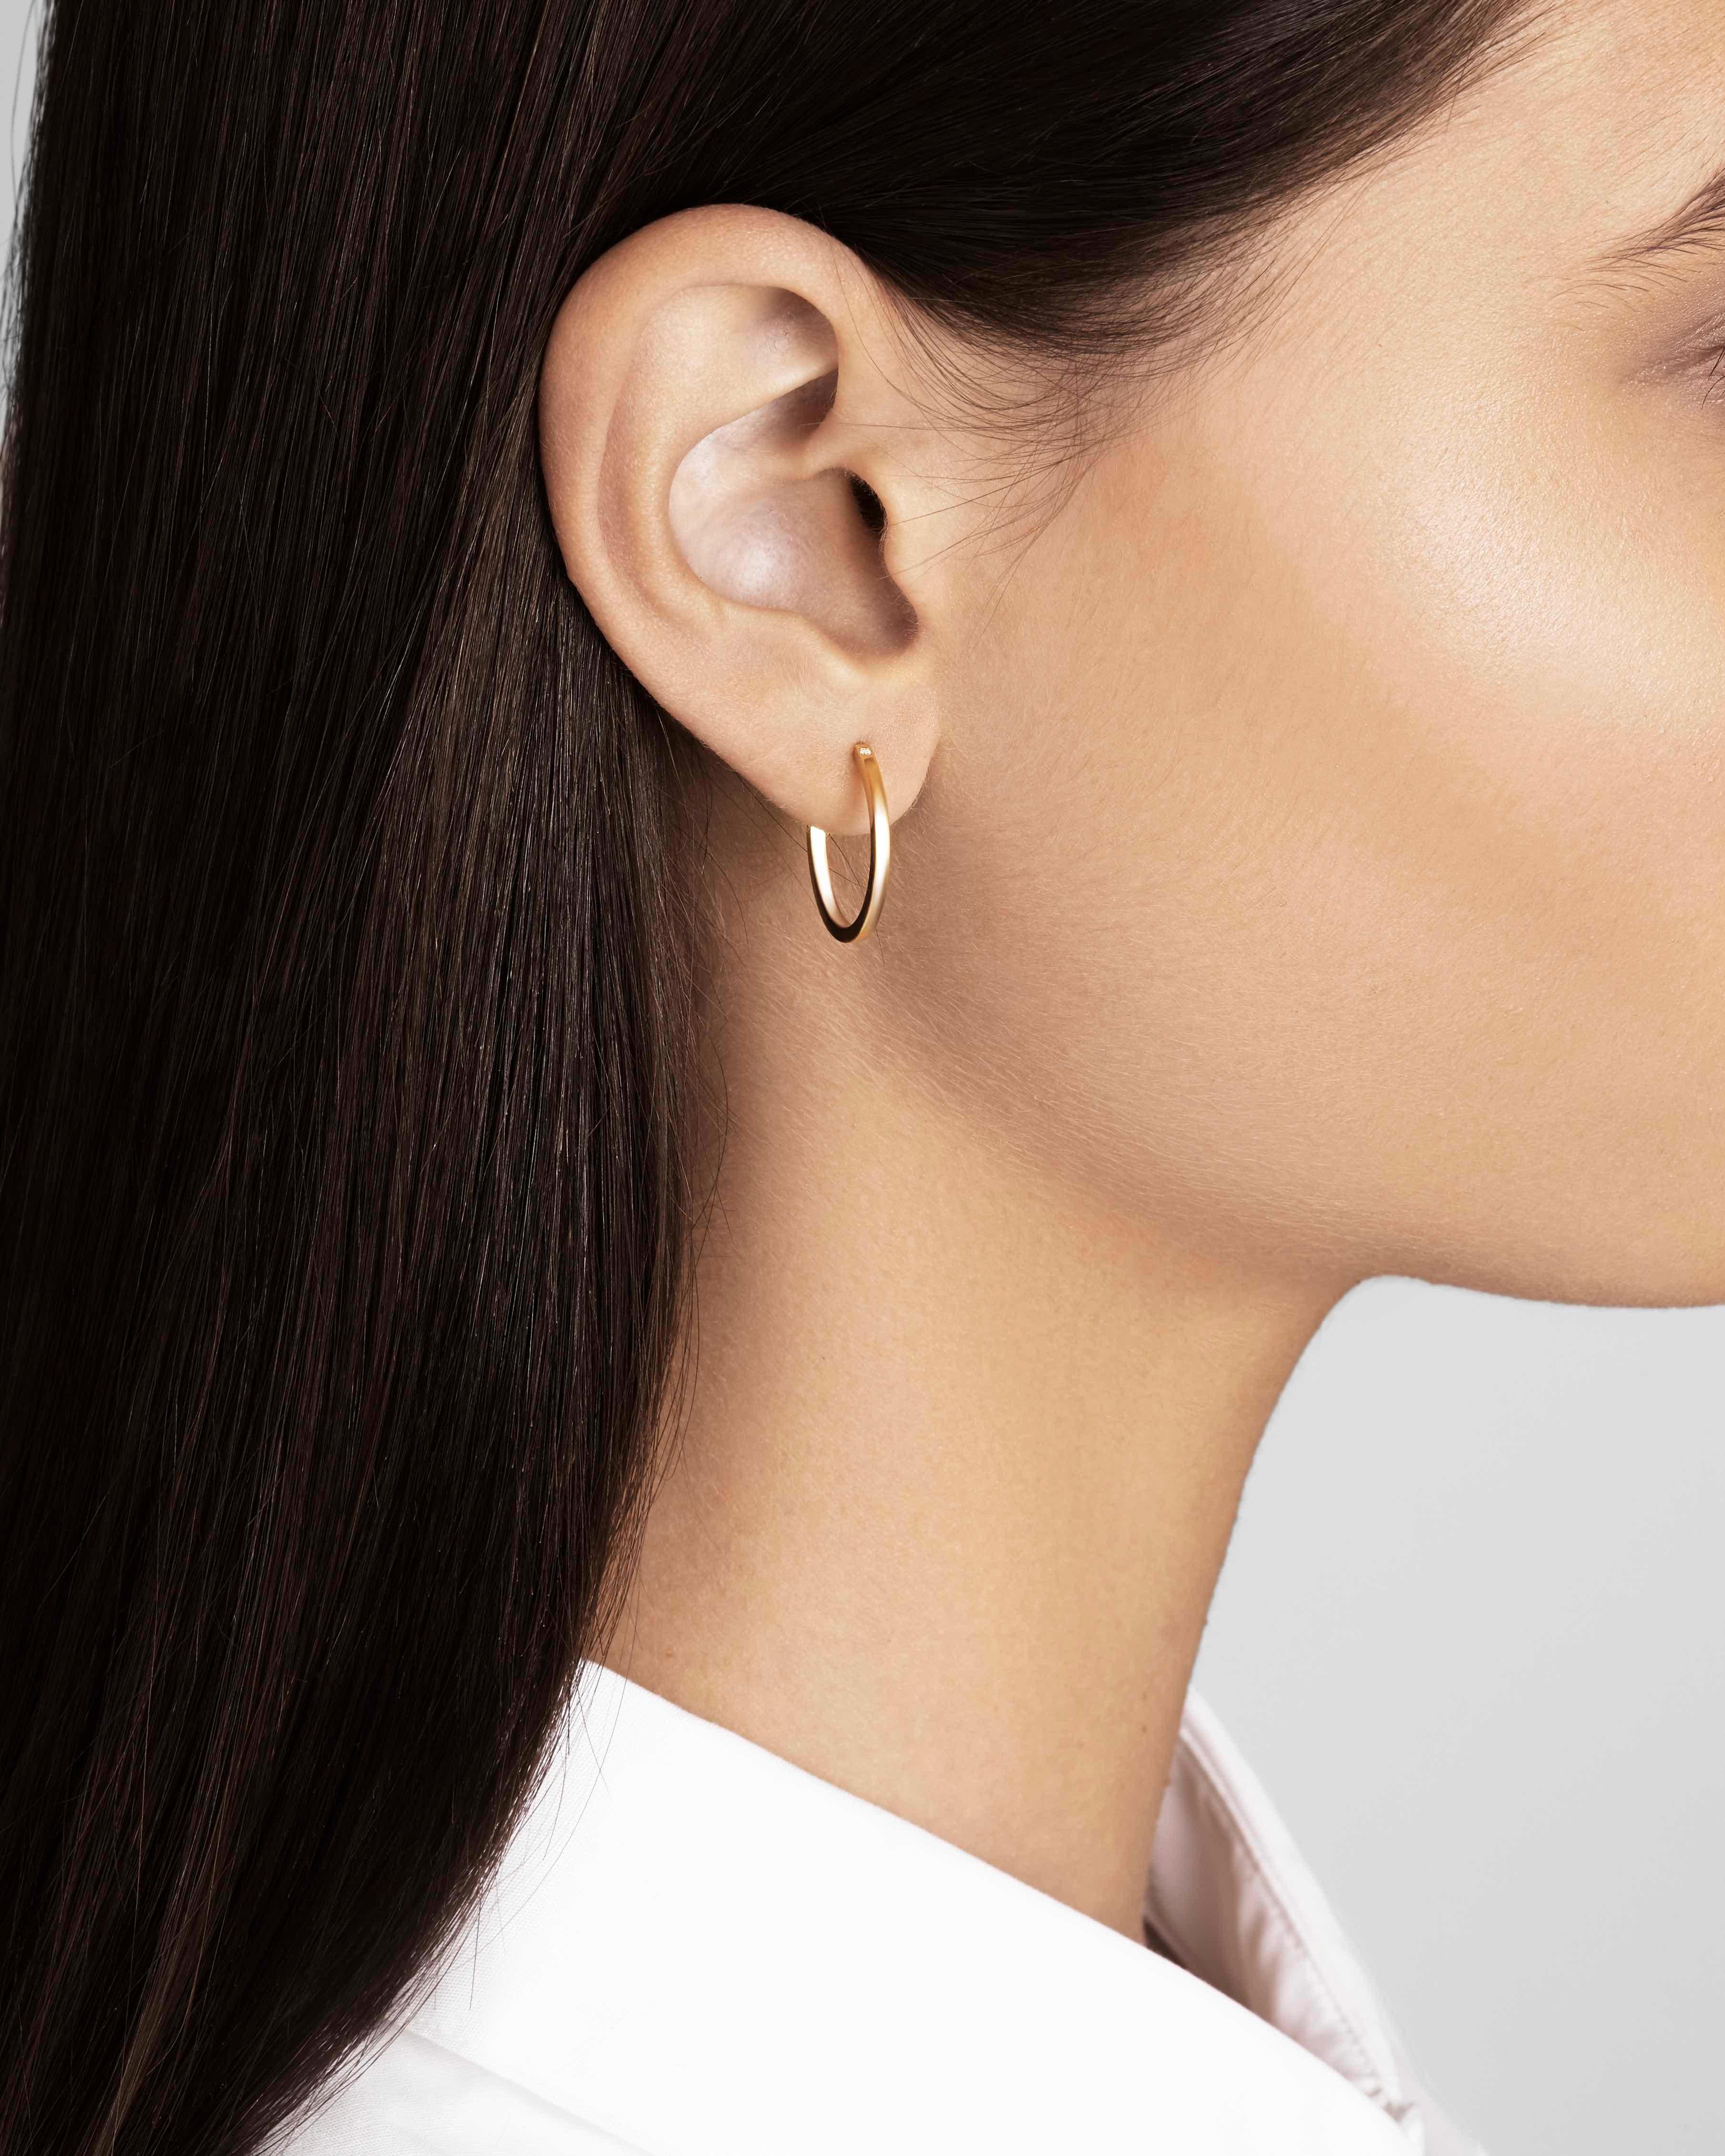 Women's 18 Karat Gold Hoop Earrings with White Diamonds by Allison Bryan